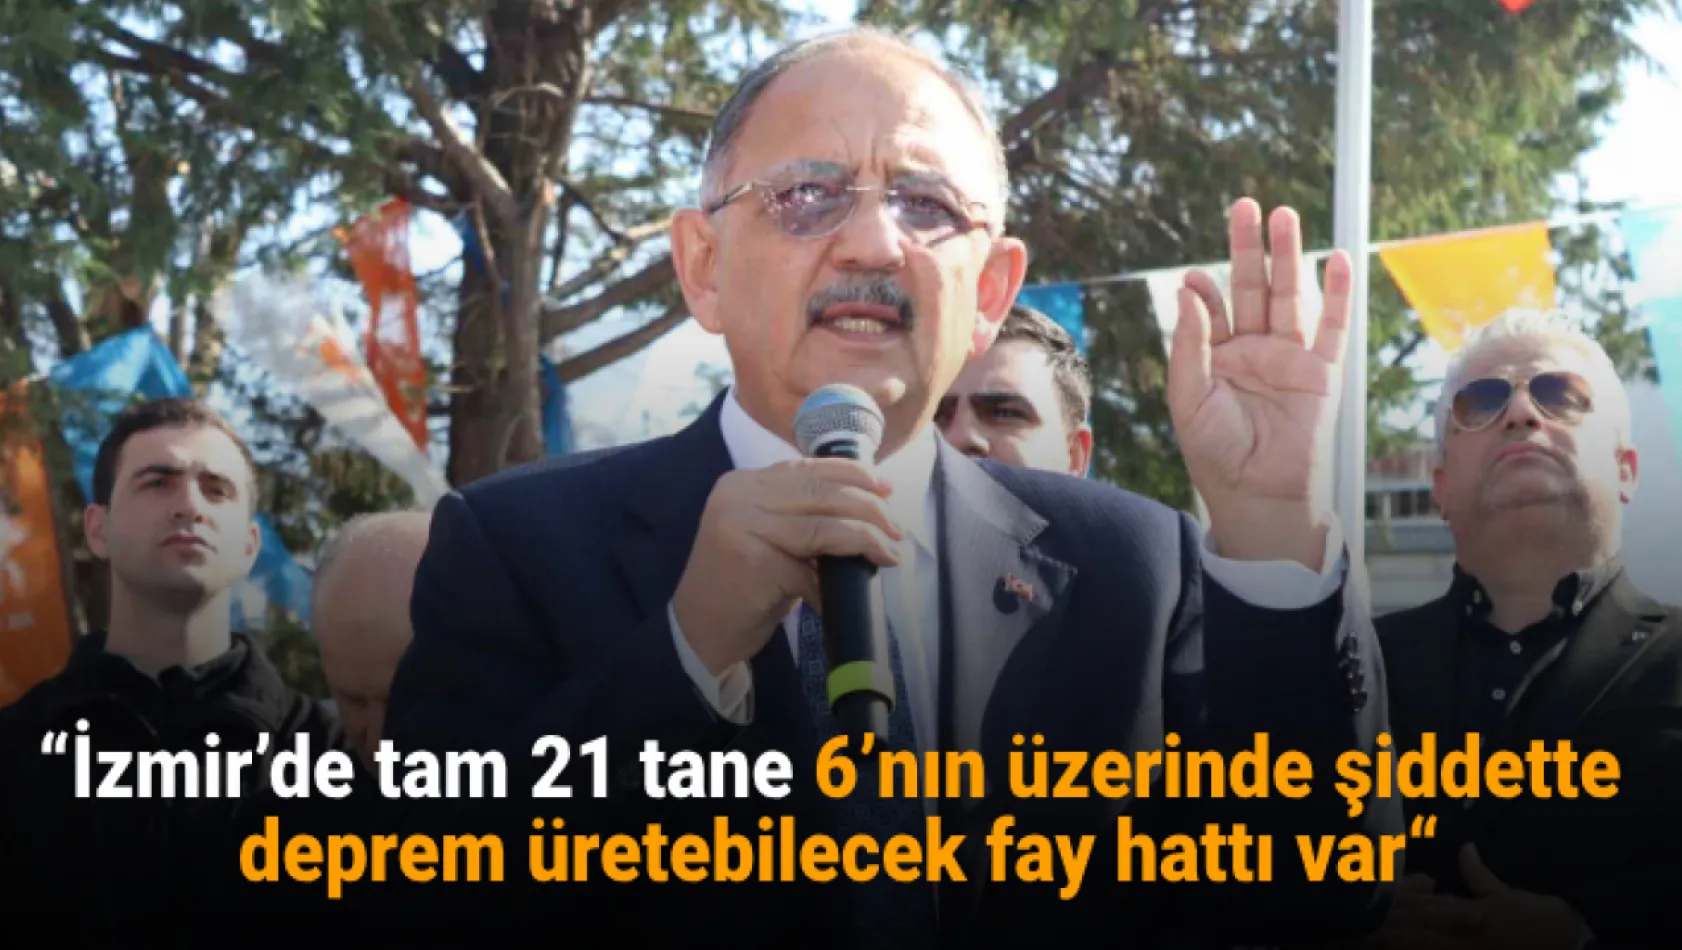 'İzmir'de tam 21 tane 6'nın üzerinde şiddette deprem üretebilecek fay hattı var'